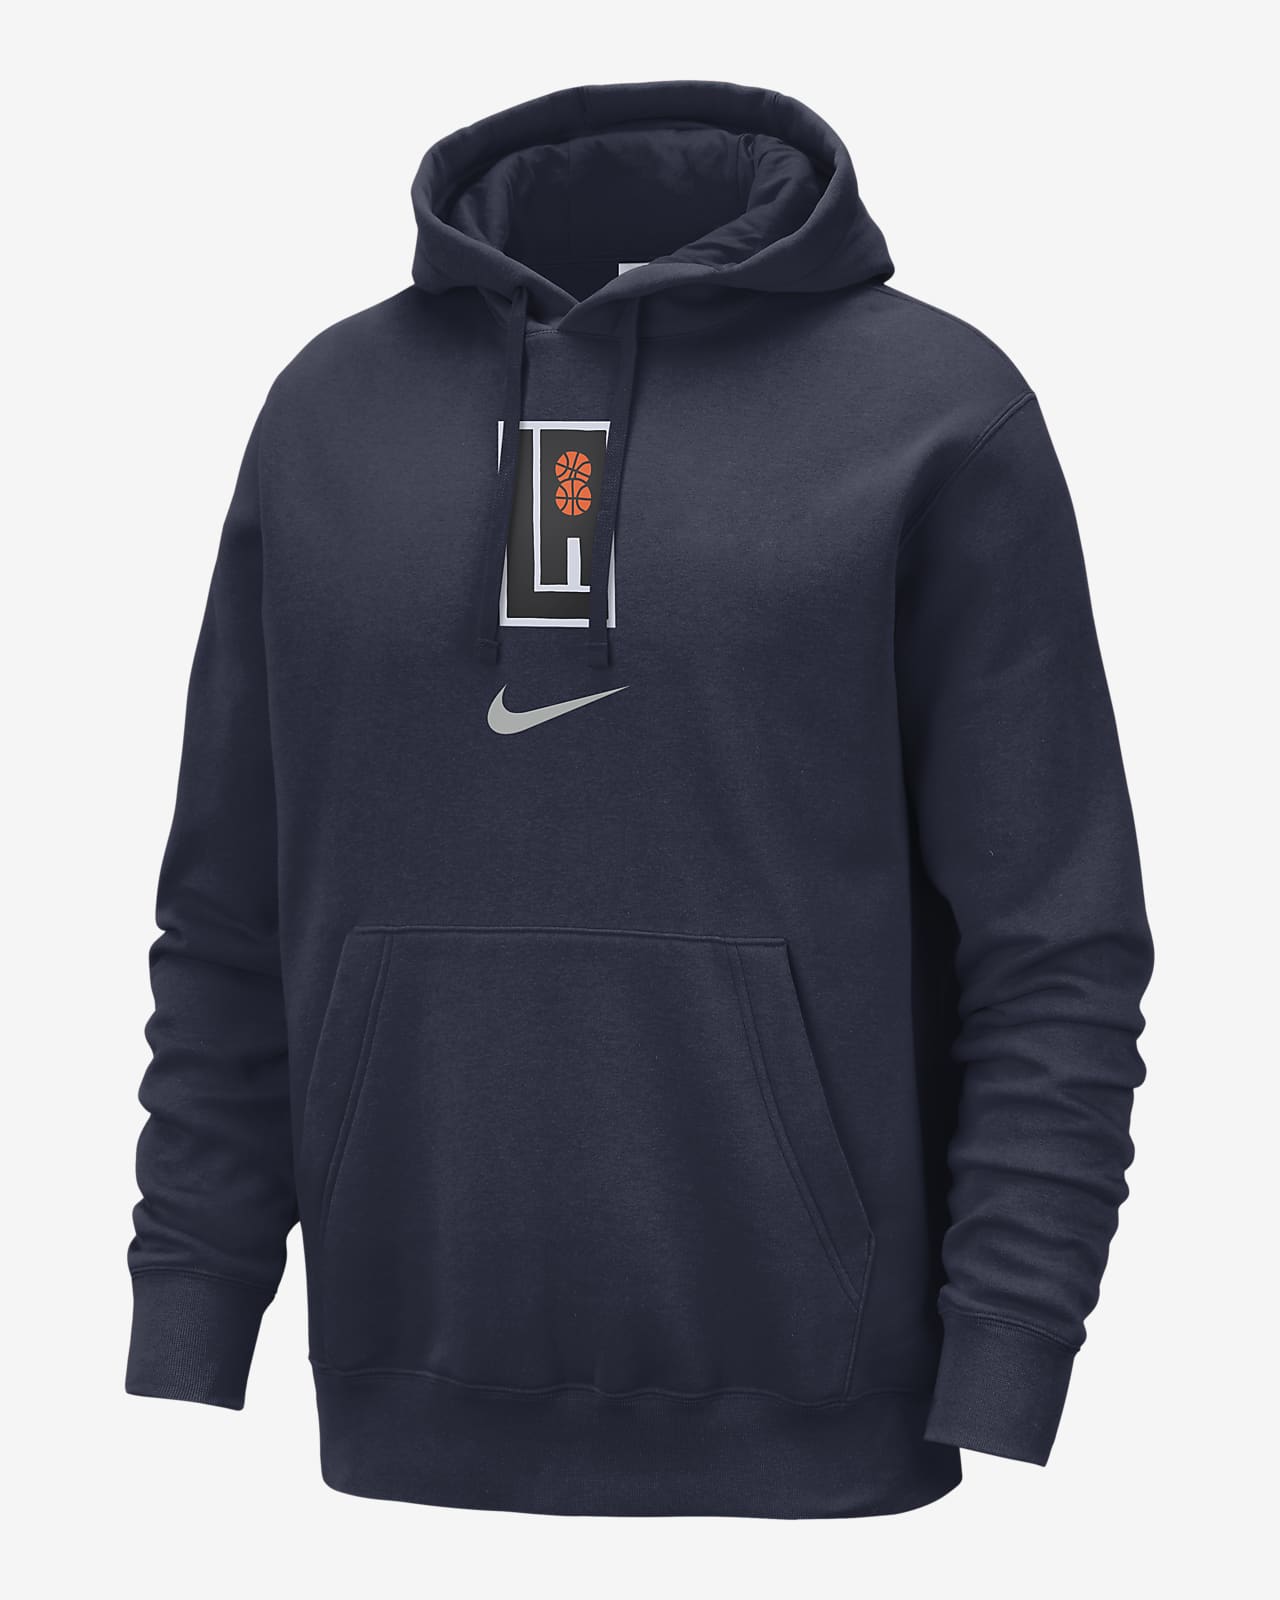 Ανδρικό φούτερ με κουκούλα Nike NBA Λος Άντζελες Κλίπερς Club Fleece City Edition